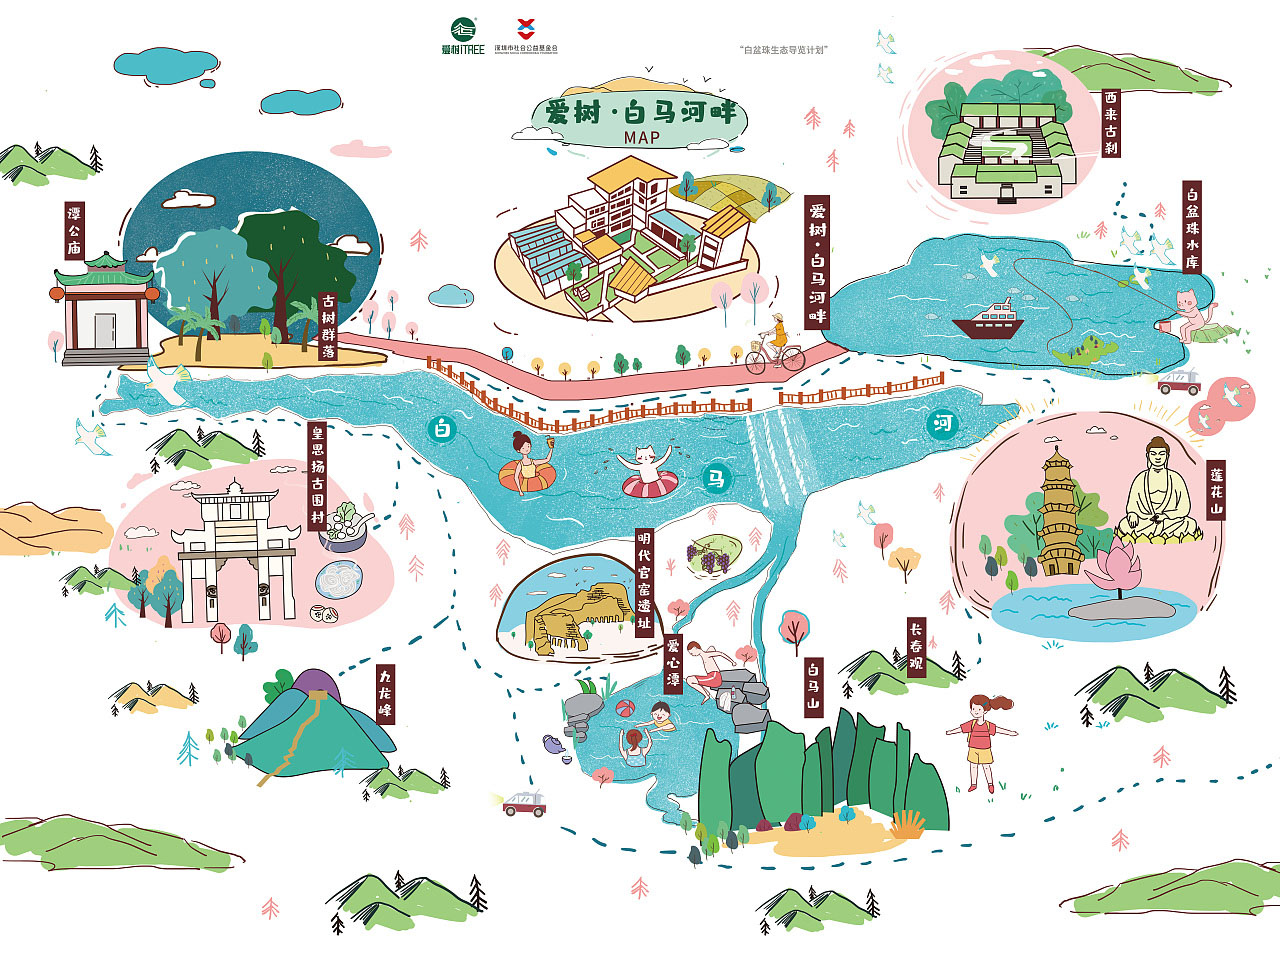 惠州语音导览让景区游览更加智能